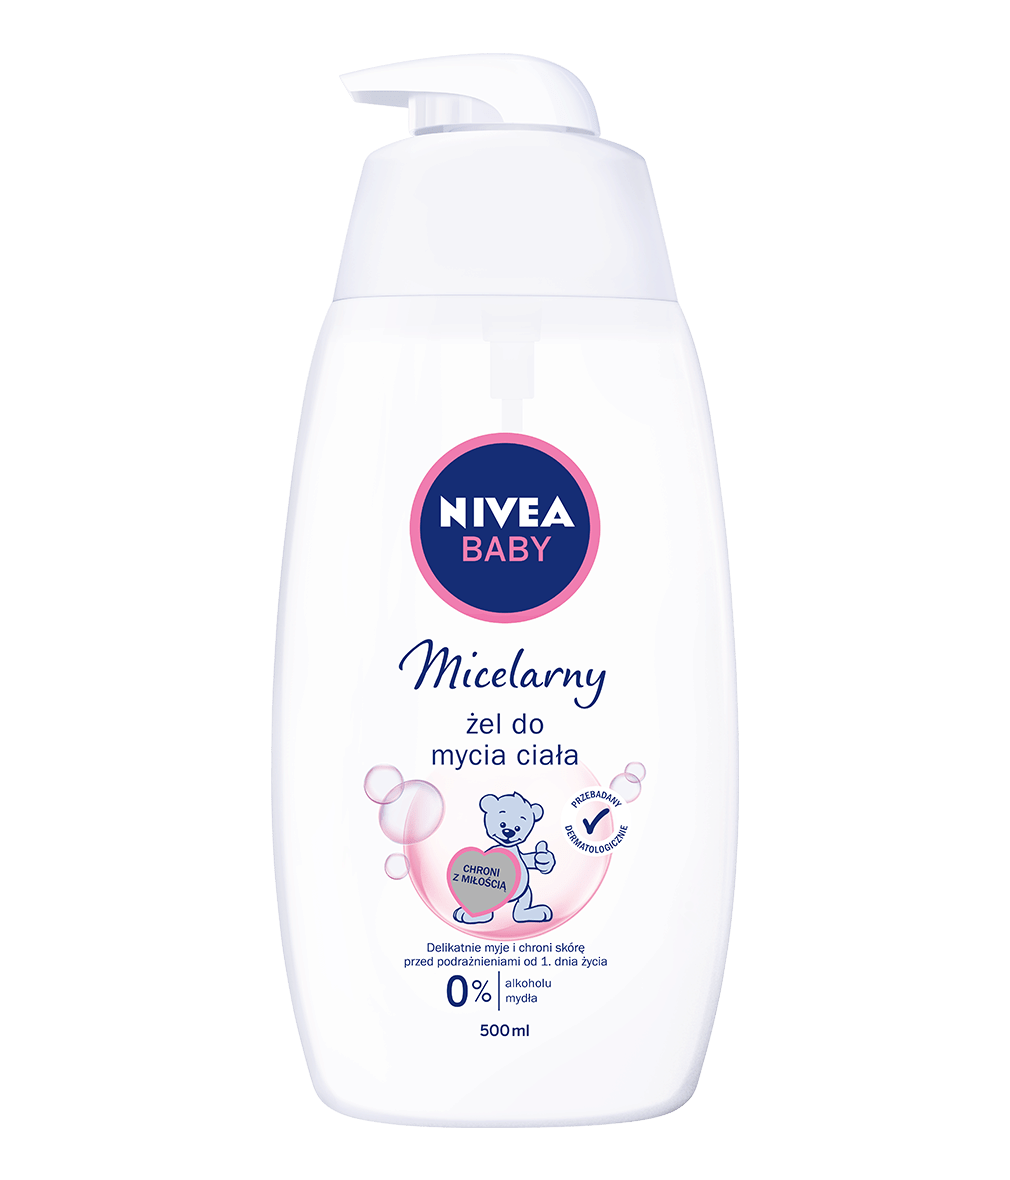 micelarny szampon nivea baby